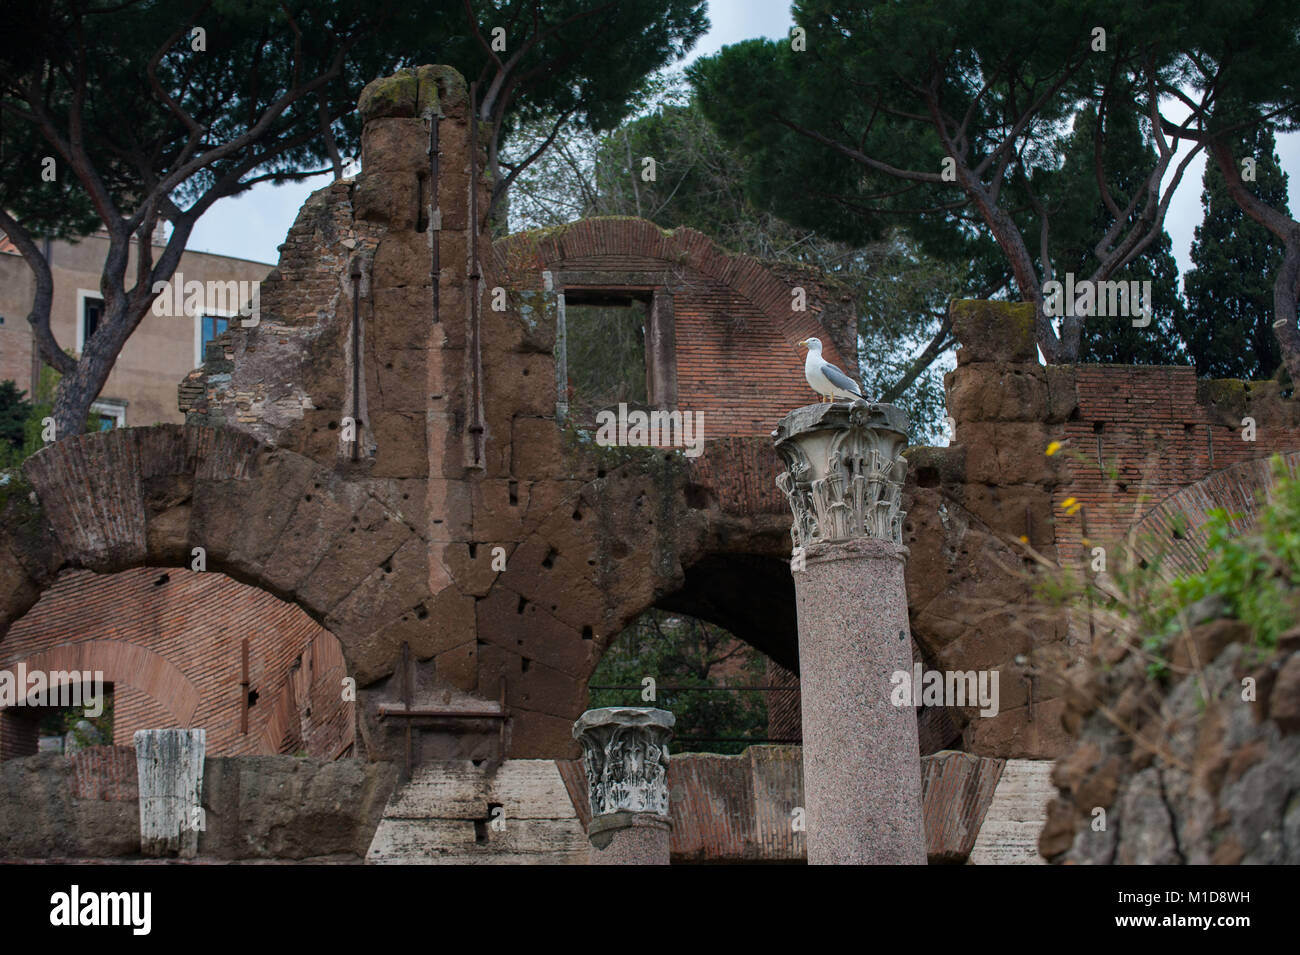 Rome, Italy. Forum of Julius Caesar. Stock Photo